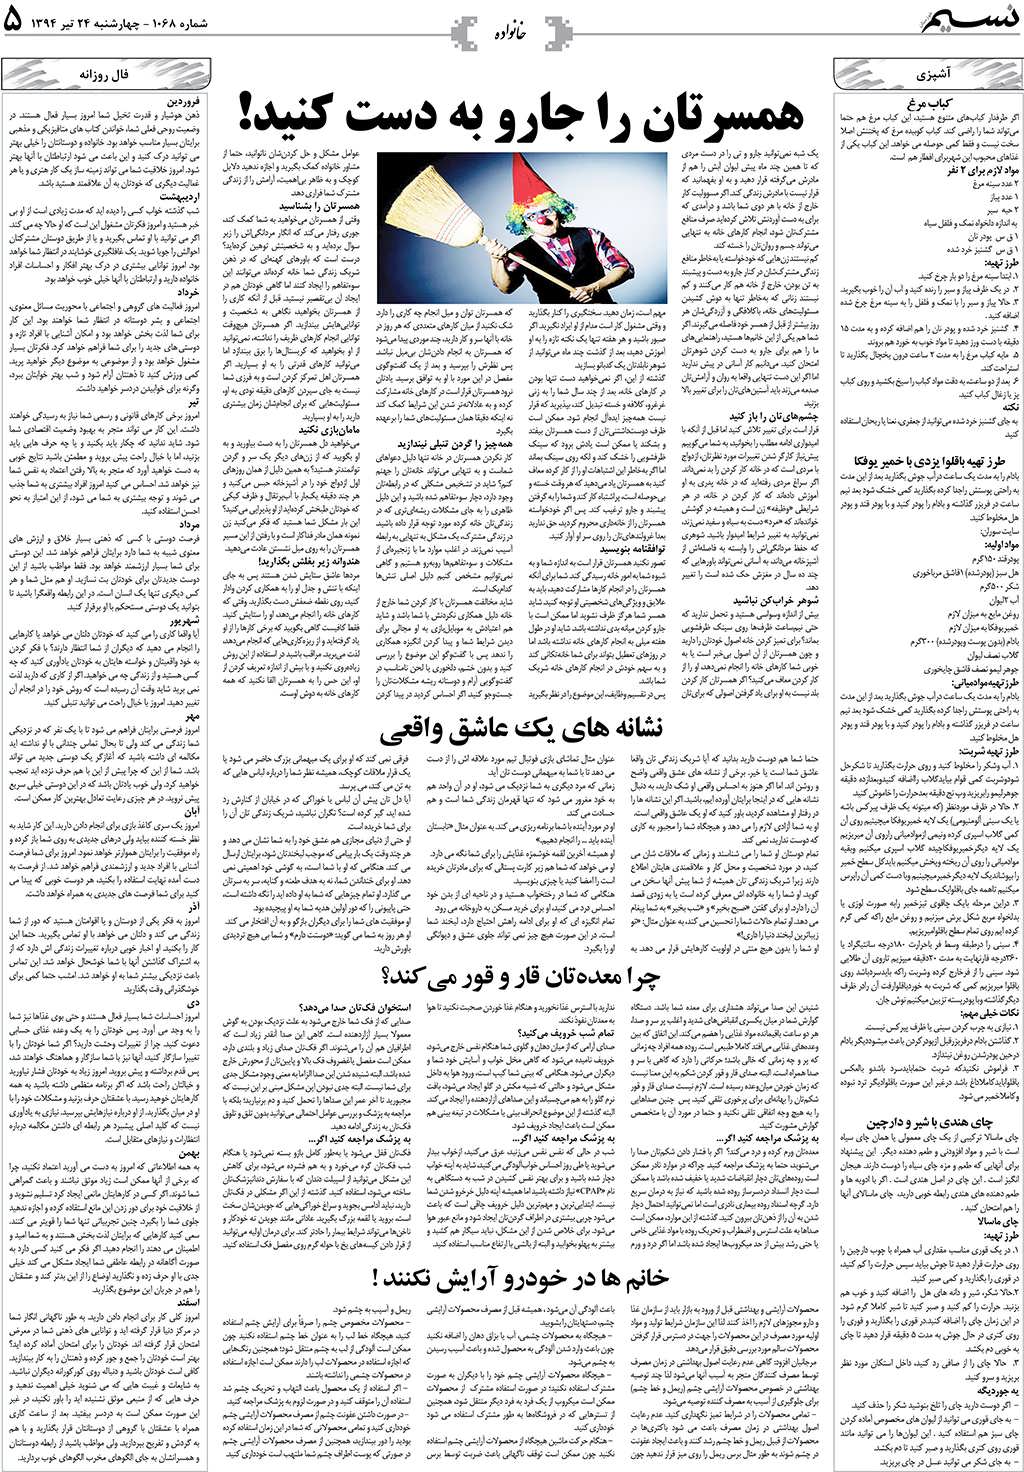 صفحه خانواده روزنامه نسیم شماره 1068